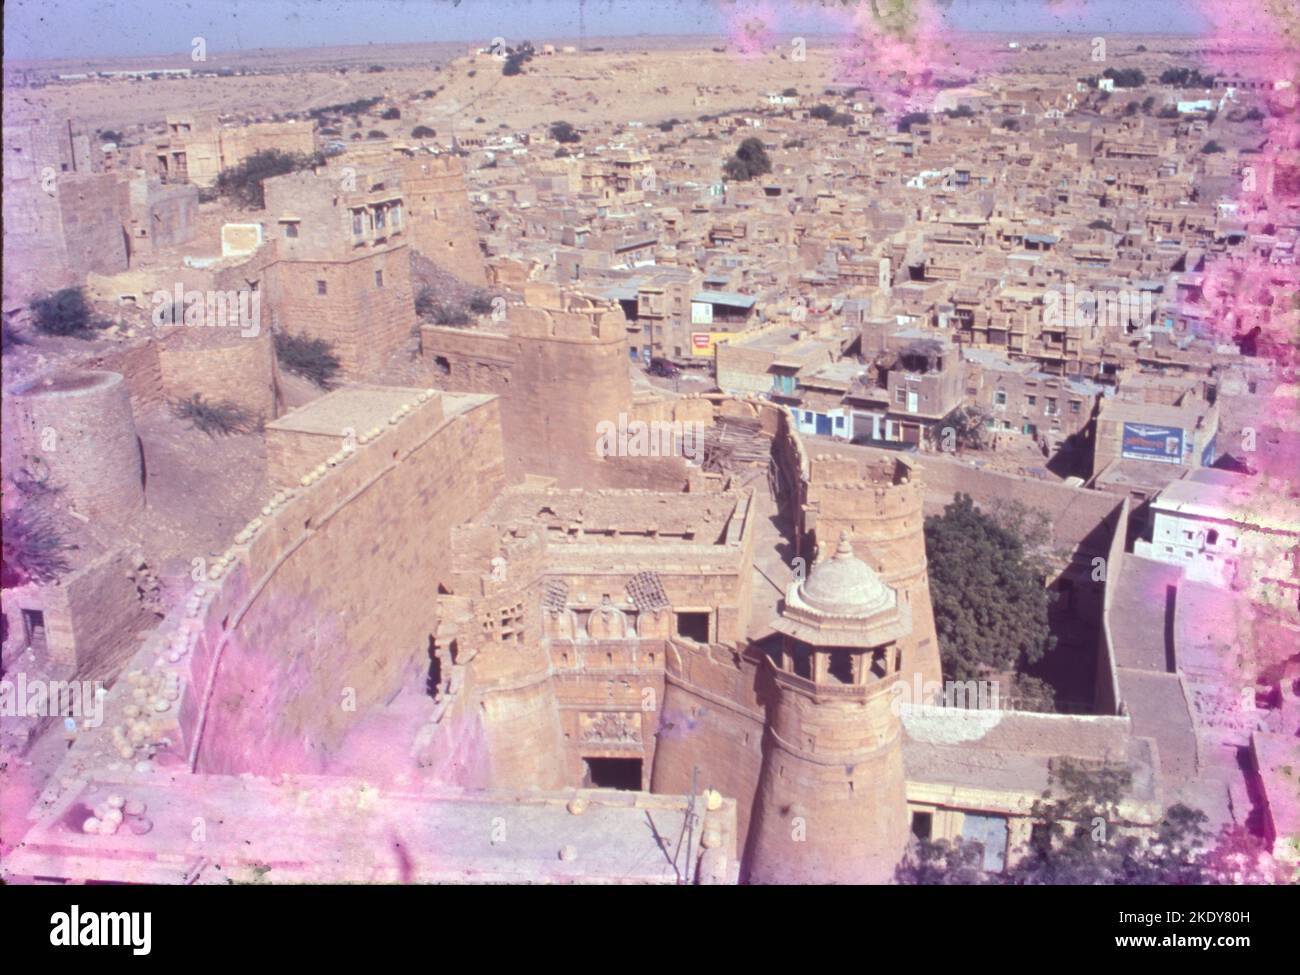 Jaisalmer Fort è situato nella città di Jaisalmer, nello stato indiano del Rajasthan. Si ritiene che sia uno dei pochissimi "forti viventi" del mondo, poiché quasi un quarto della popolazione della città vecchia risiede ancora all'interno del forte. Per la parte migliore della sua storia di 860 anni, il forte era la città di Jaisalmer. Foto Stock